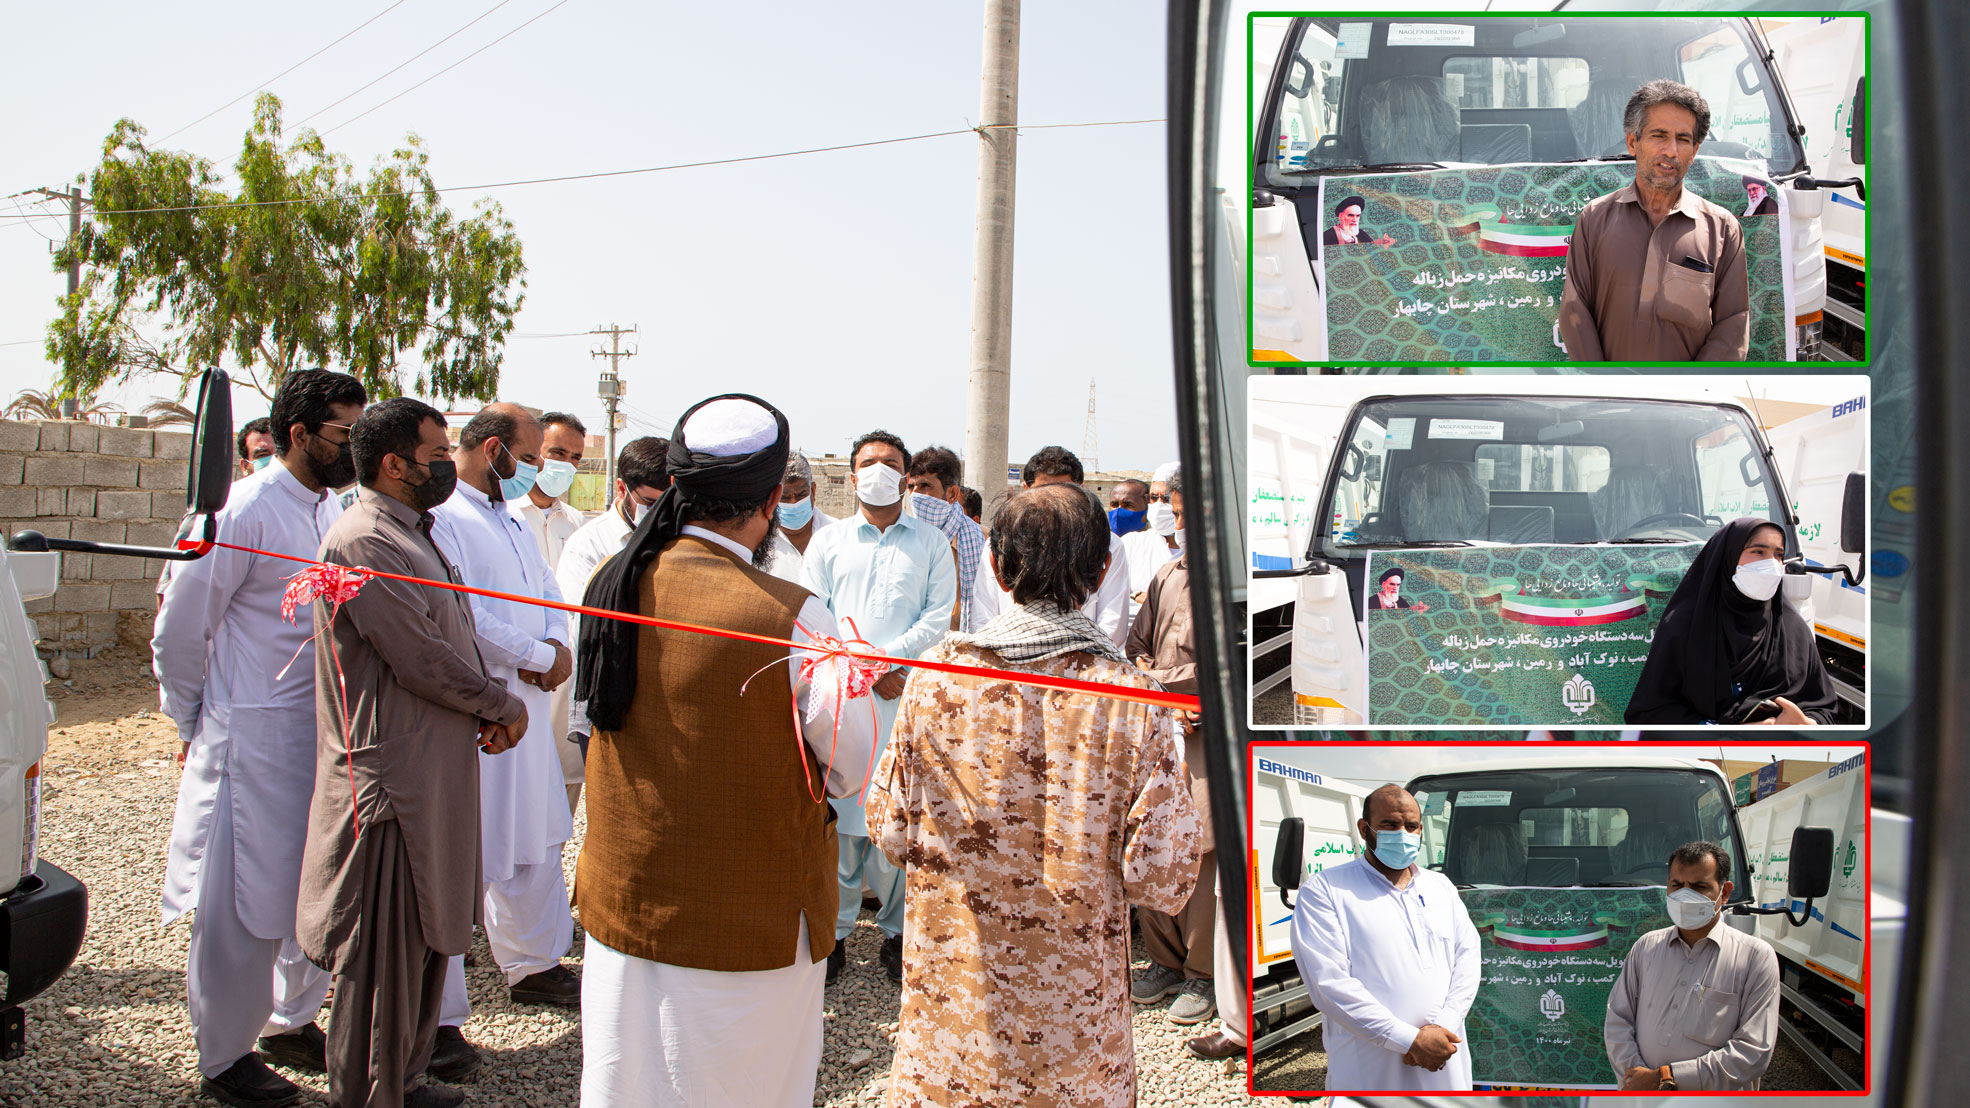 ۳ دستگاه خودروی مکانیزه حمل زباله به روستاهای حاشیه شهر چابهار اهدا شد